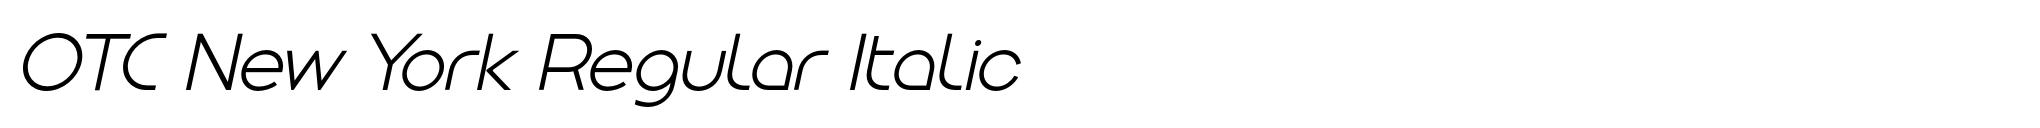 OTC New York Regular Italic image